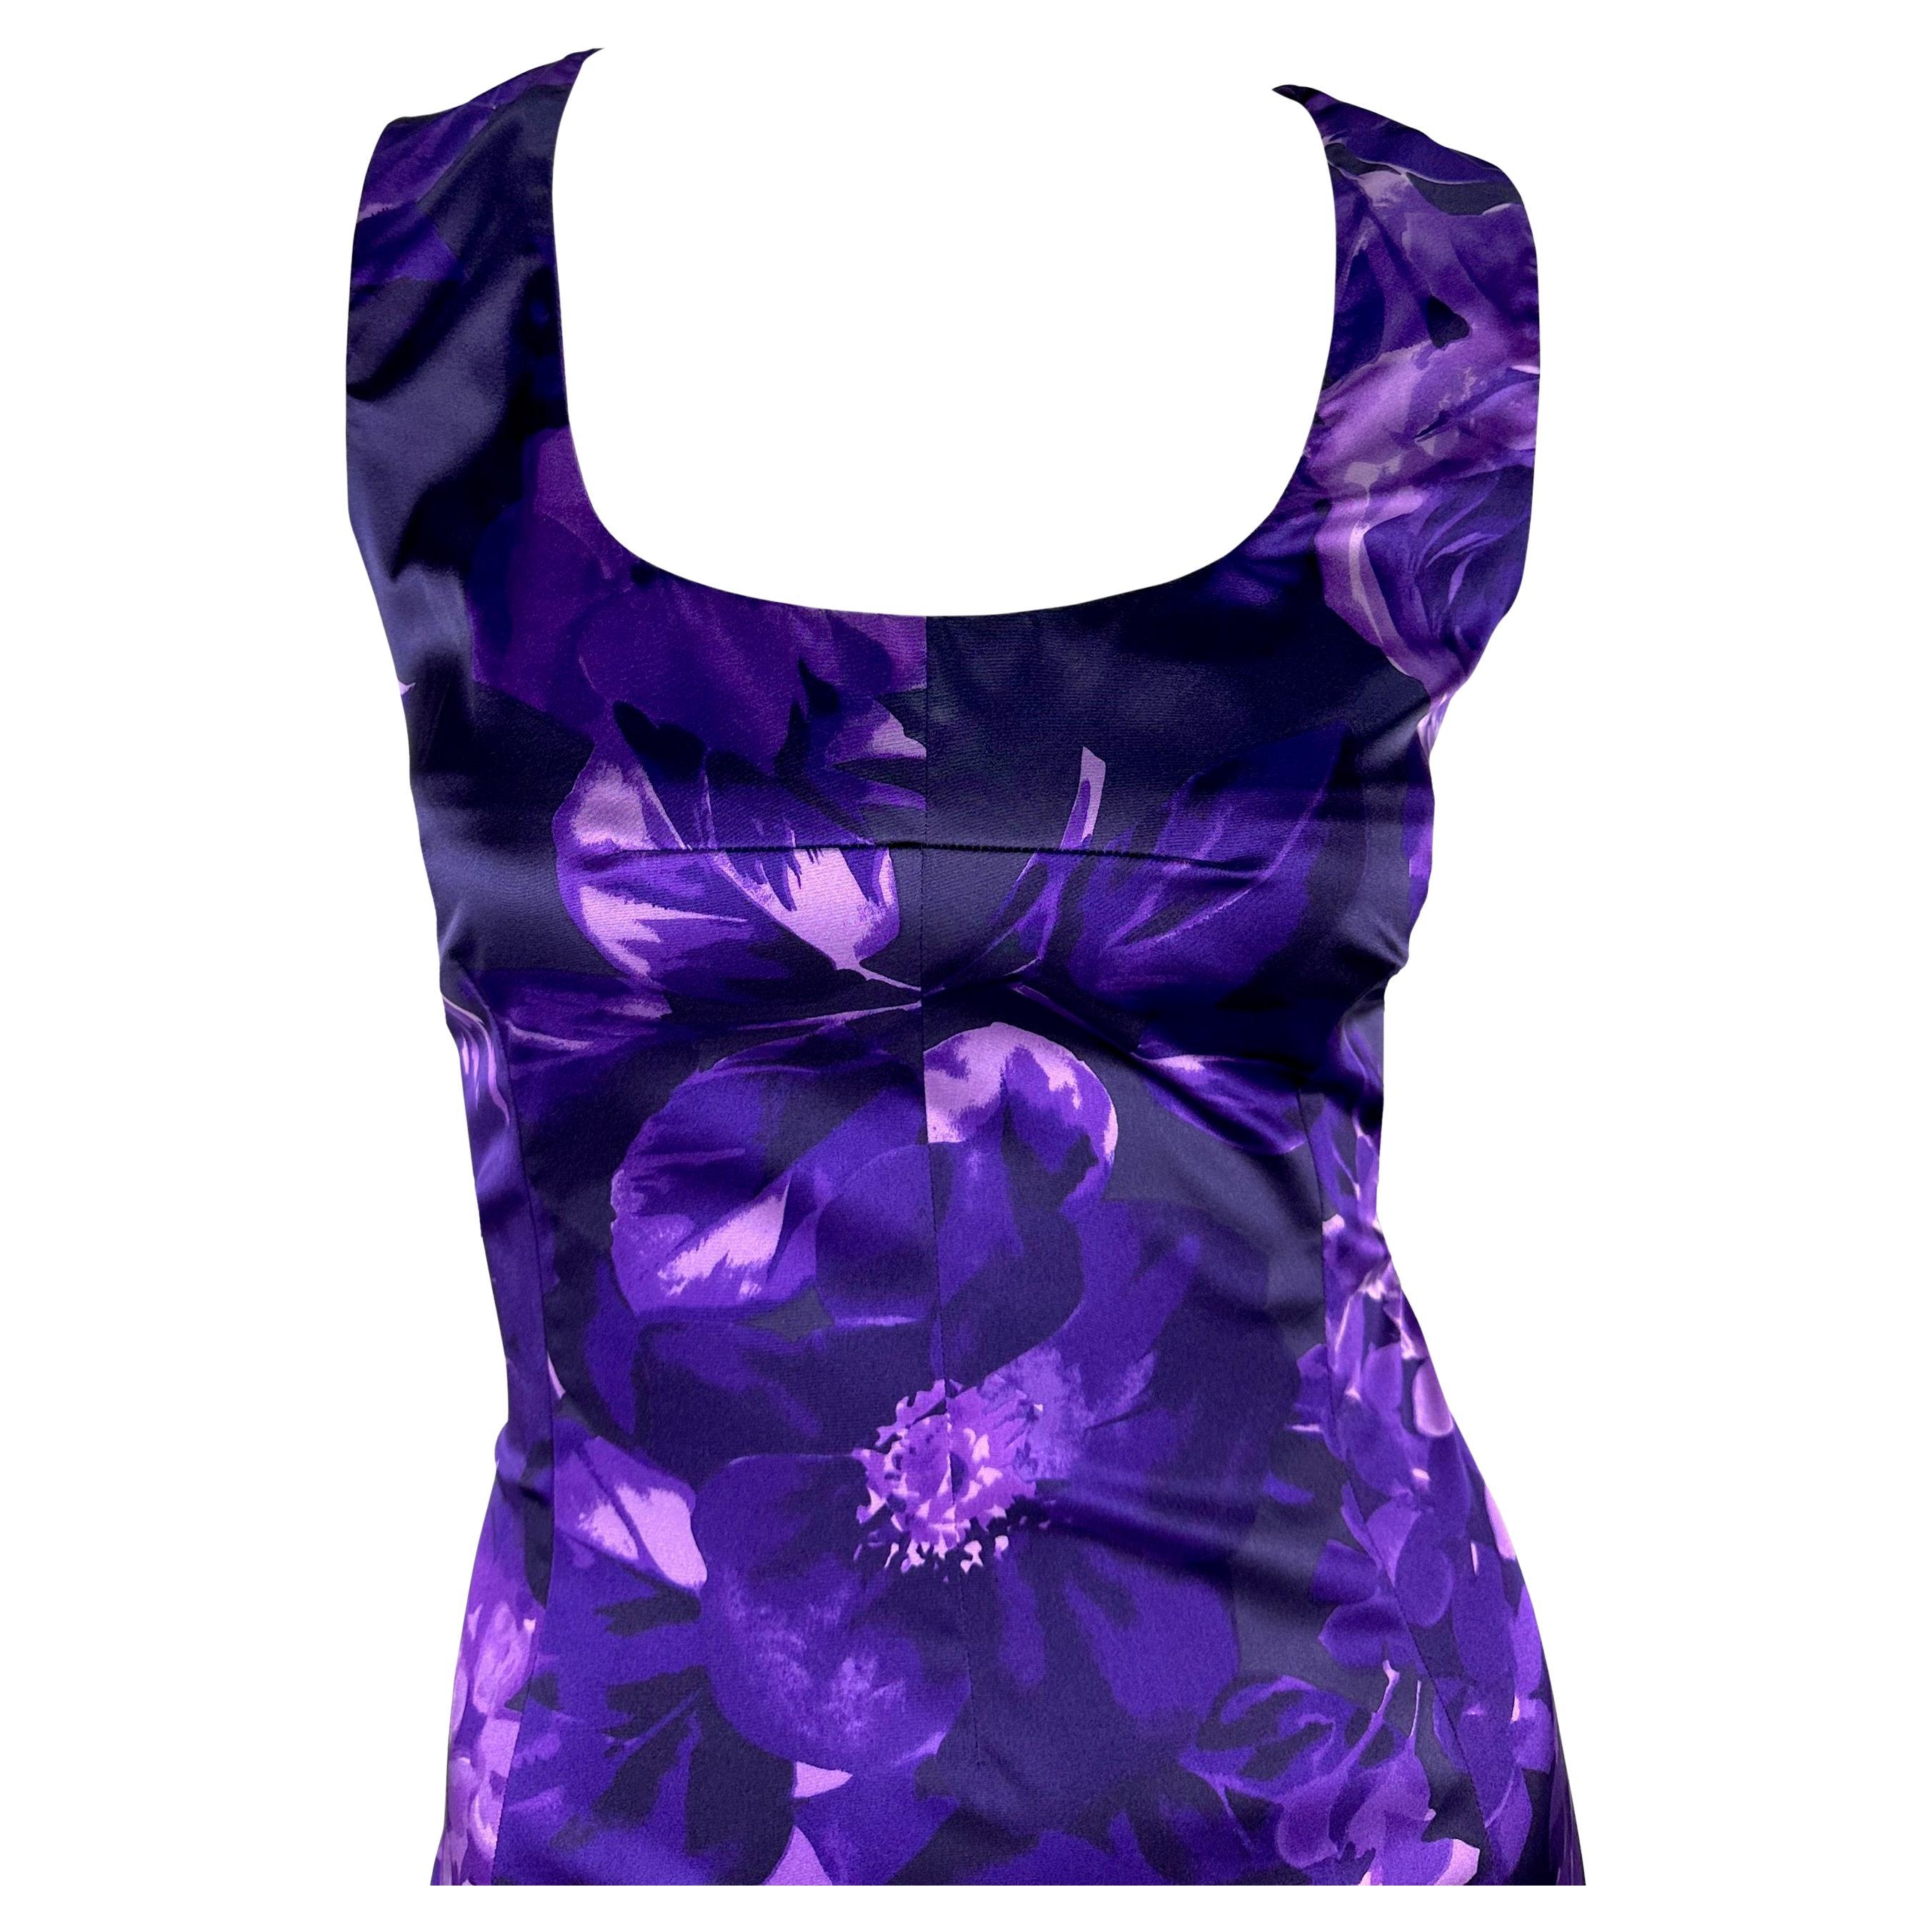 Dieses knielange Kleid von Dolce & Gabbana ist mit einem farbenfrohen Blumenmuster in Lila-Tönen versehen, das den Körper schön umspielt. Mit seinem Rundhalsausschnitt und den breiten Schulterträgern setzt dieses seidige Kleid ein gewagtes Statement